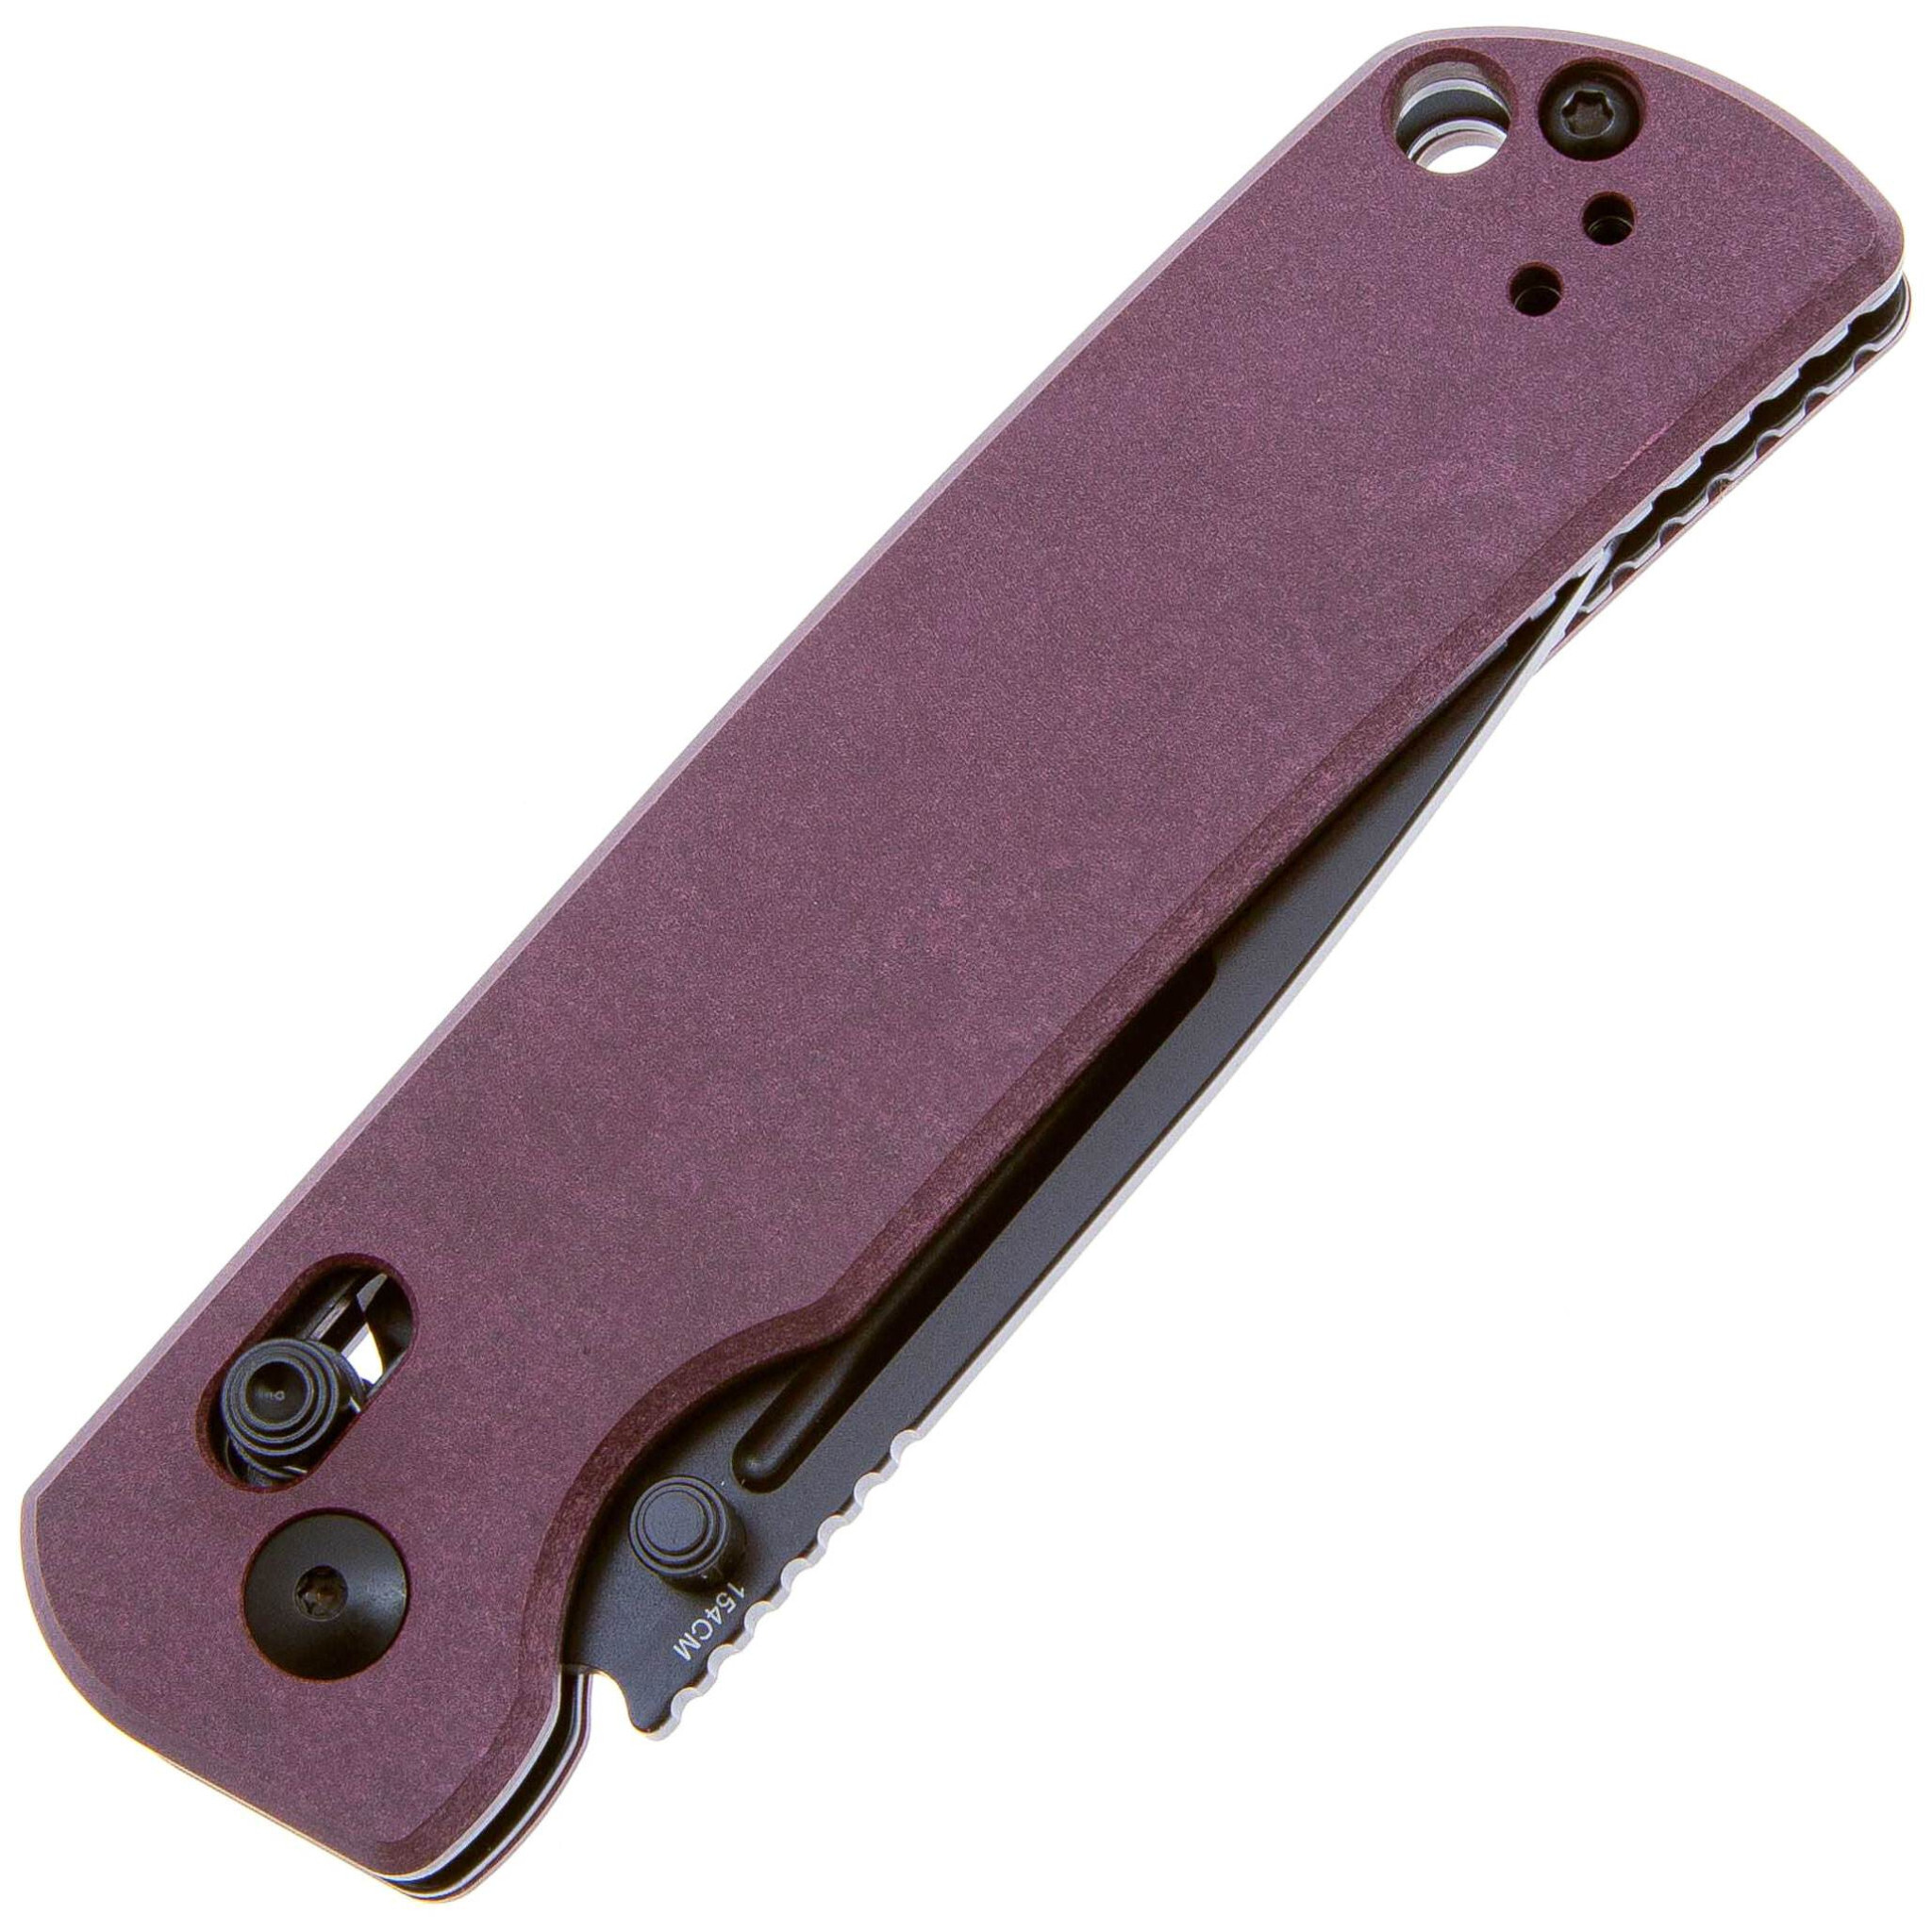 Складной нож Kizer Escort, сталь 154CM, рукоять Richlite, фиолетовый - фото 3